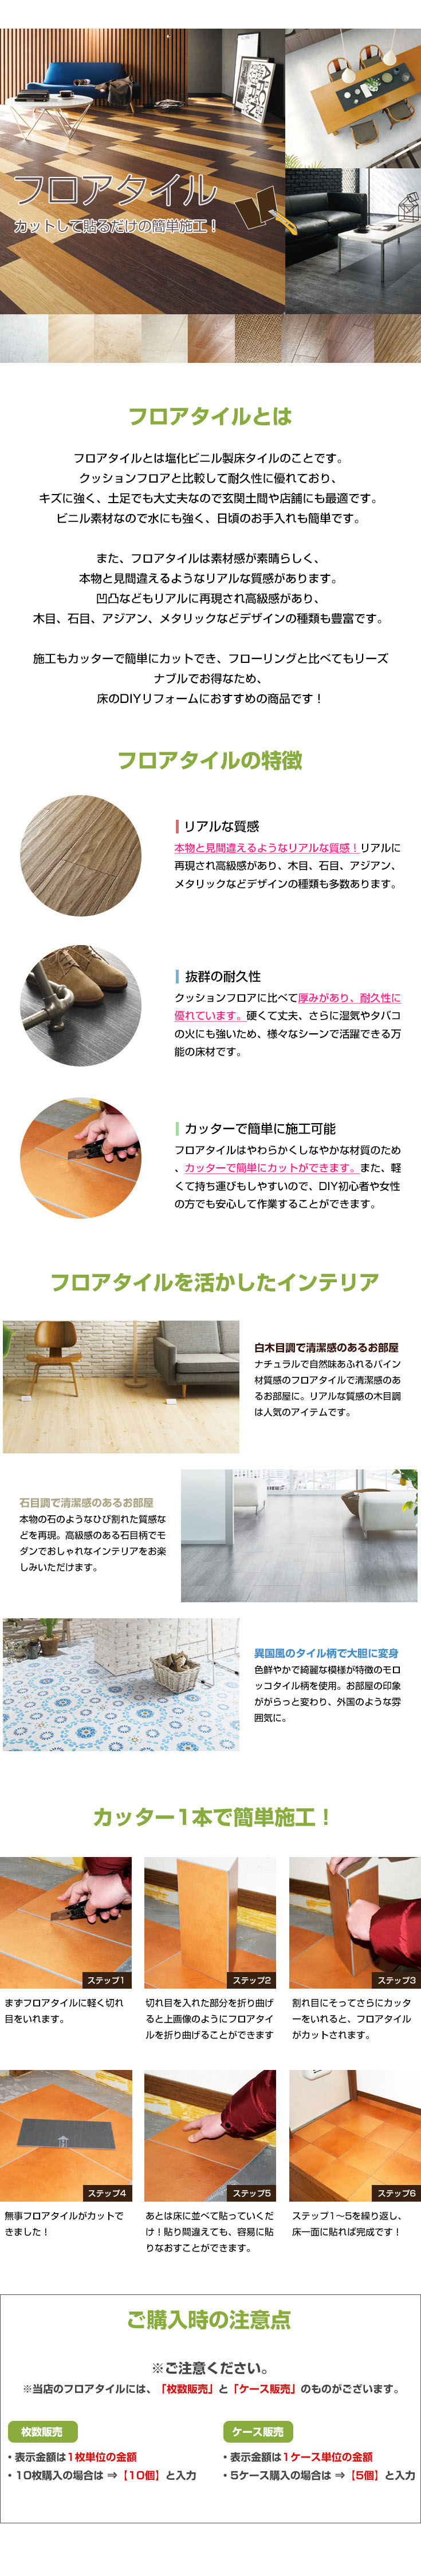 日本製 フロアタイル シンコール Ms1038 1枚販売 ストーン 壁紙diy ルームファクトリー